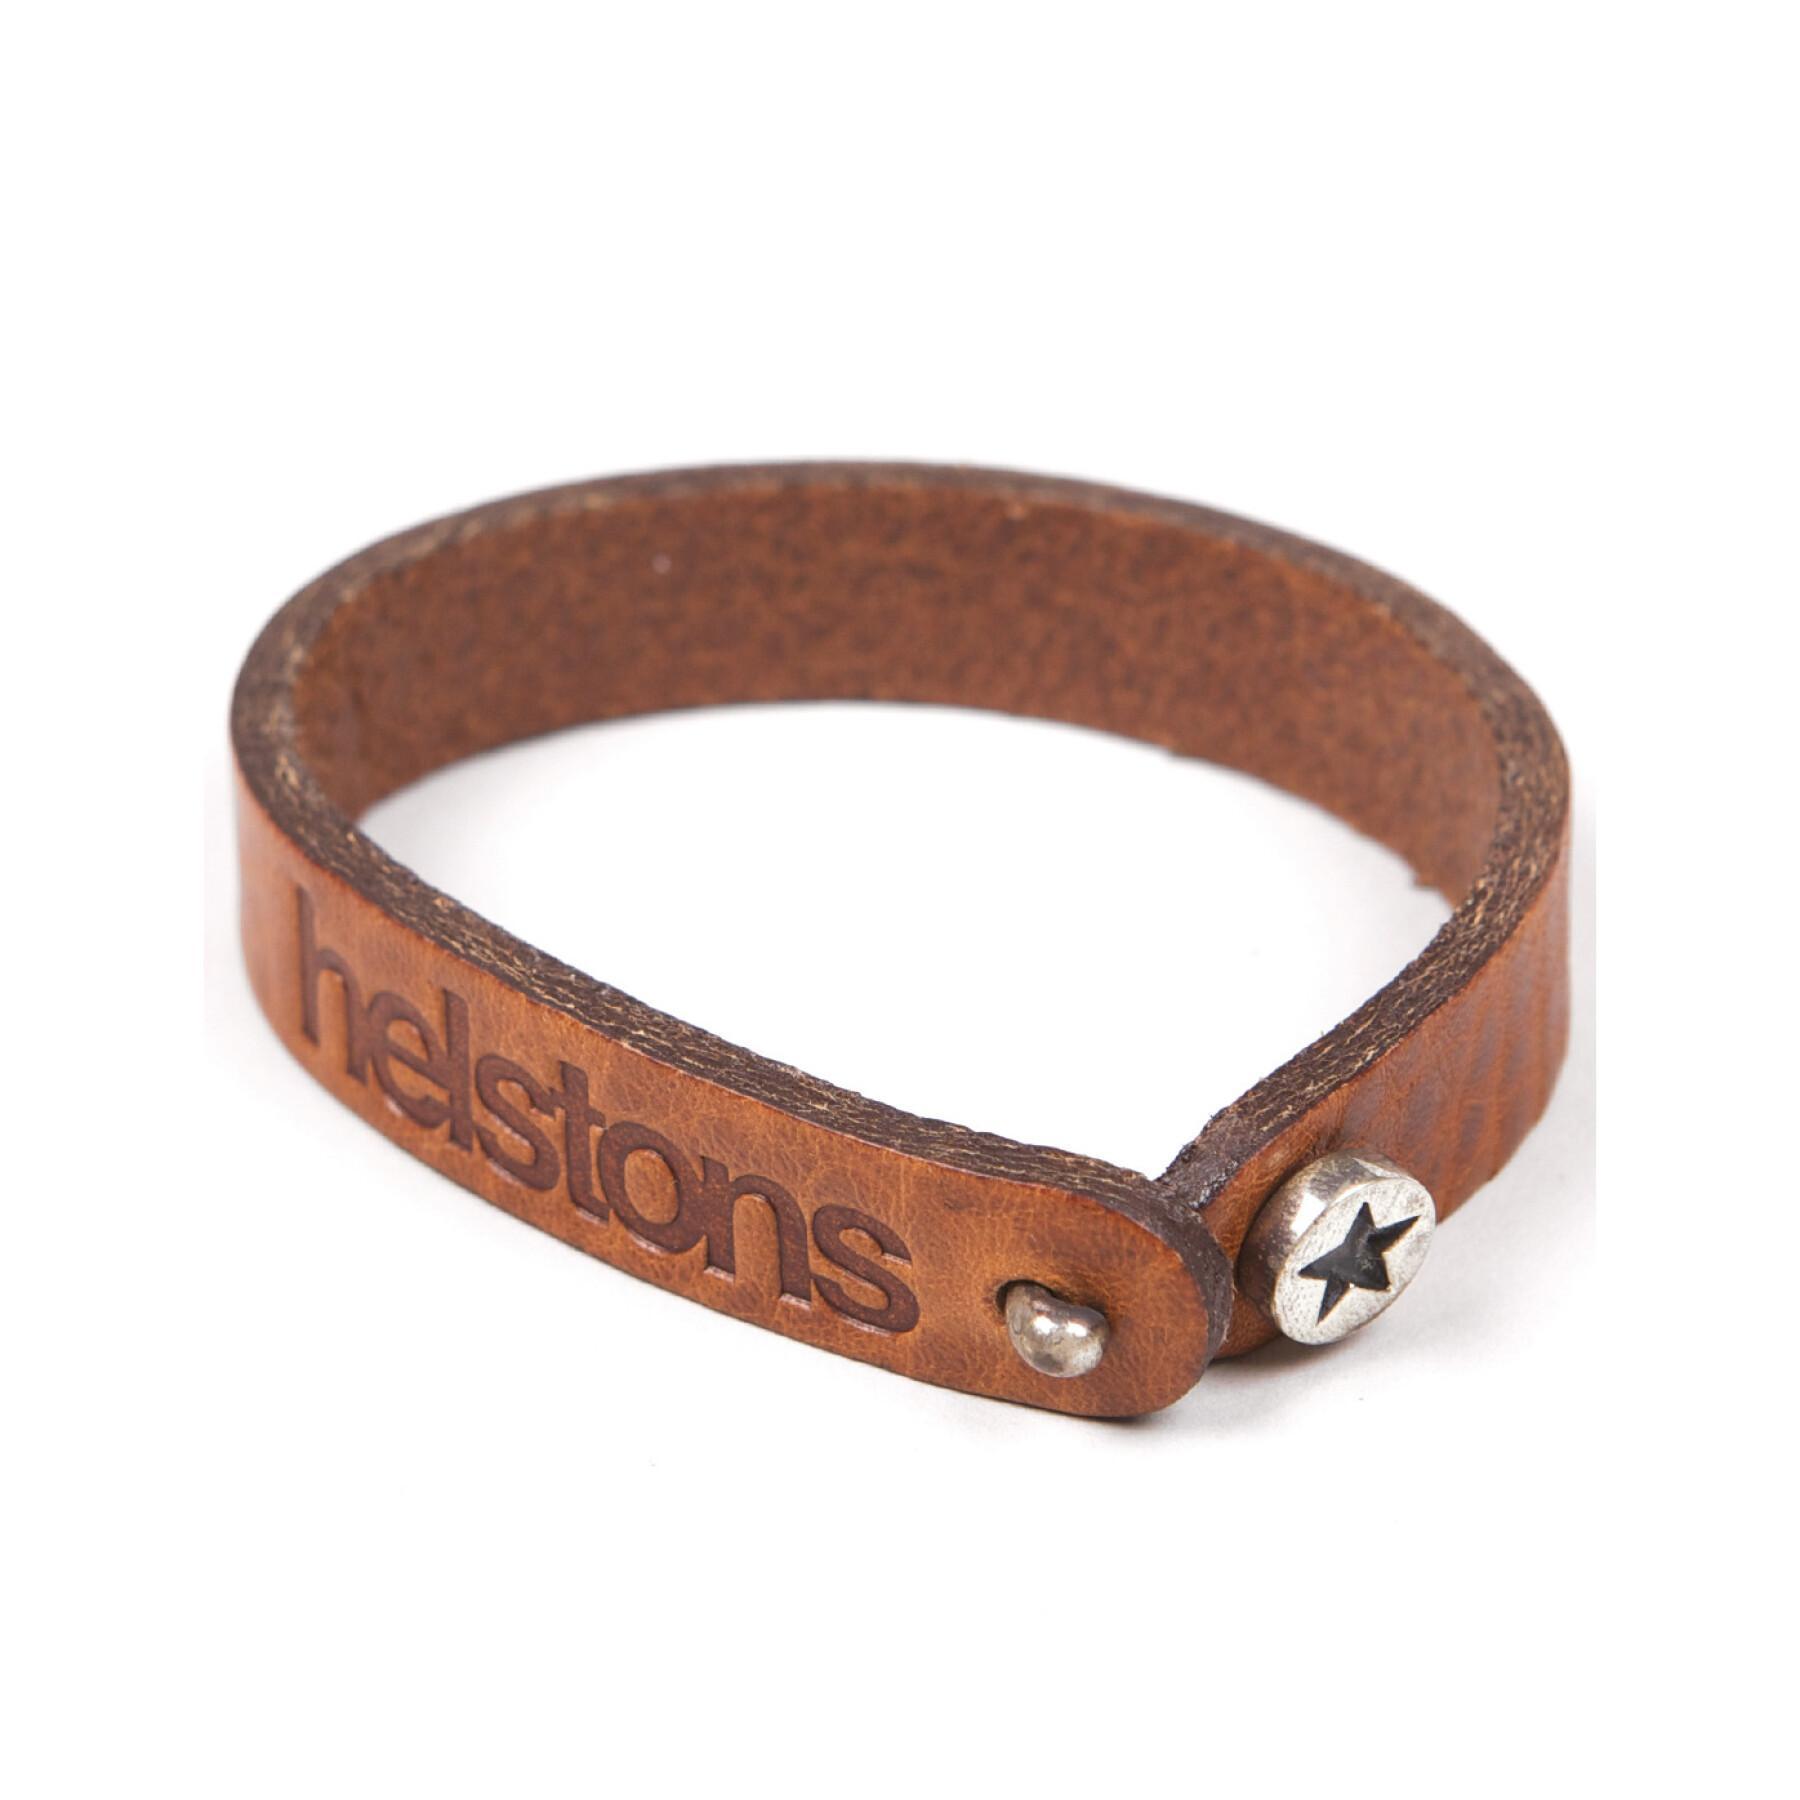 Cattle leather bracelet Helstons star